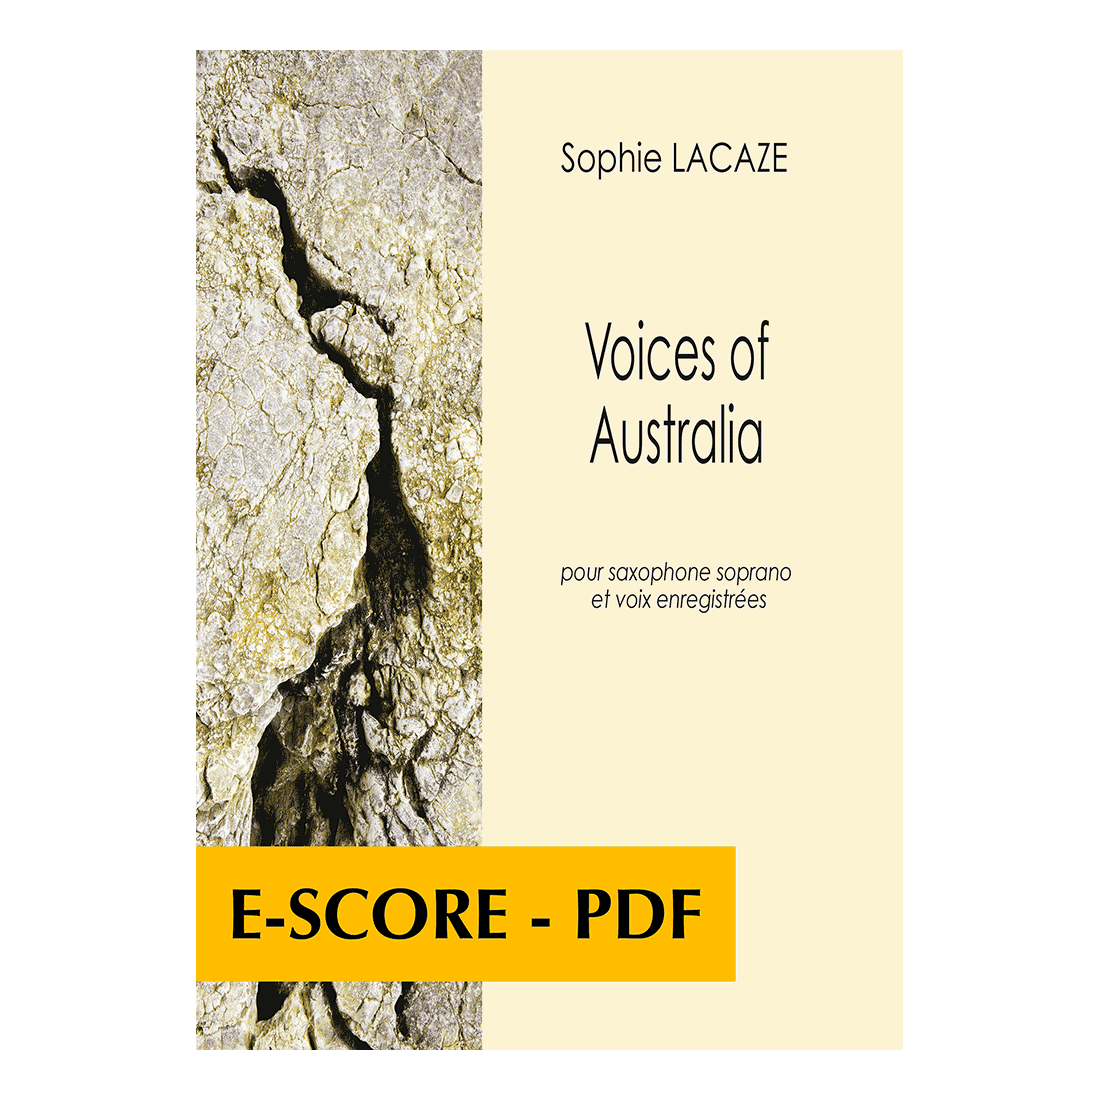 Voices of Australia pour saxophone soprano et voix enregistrées - E-score PDF